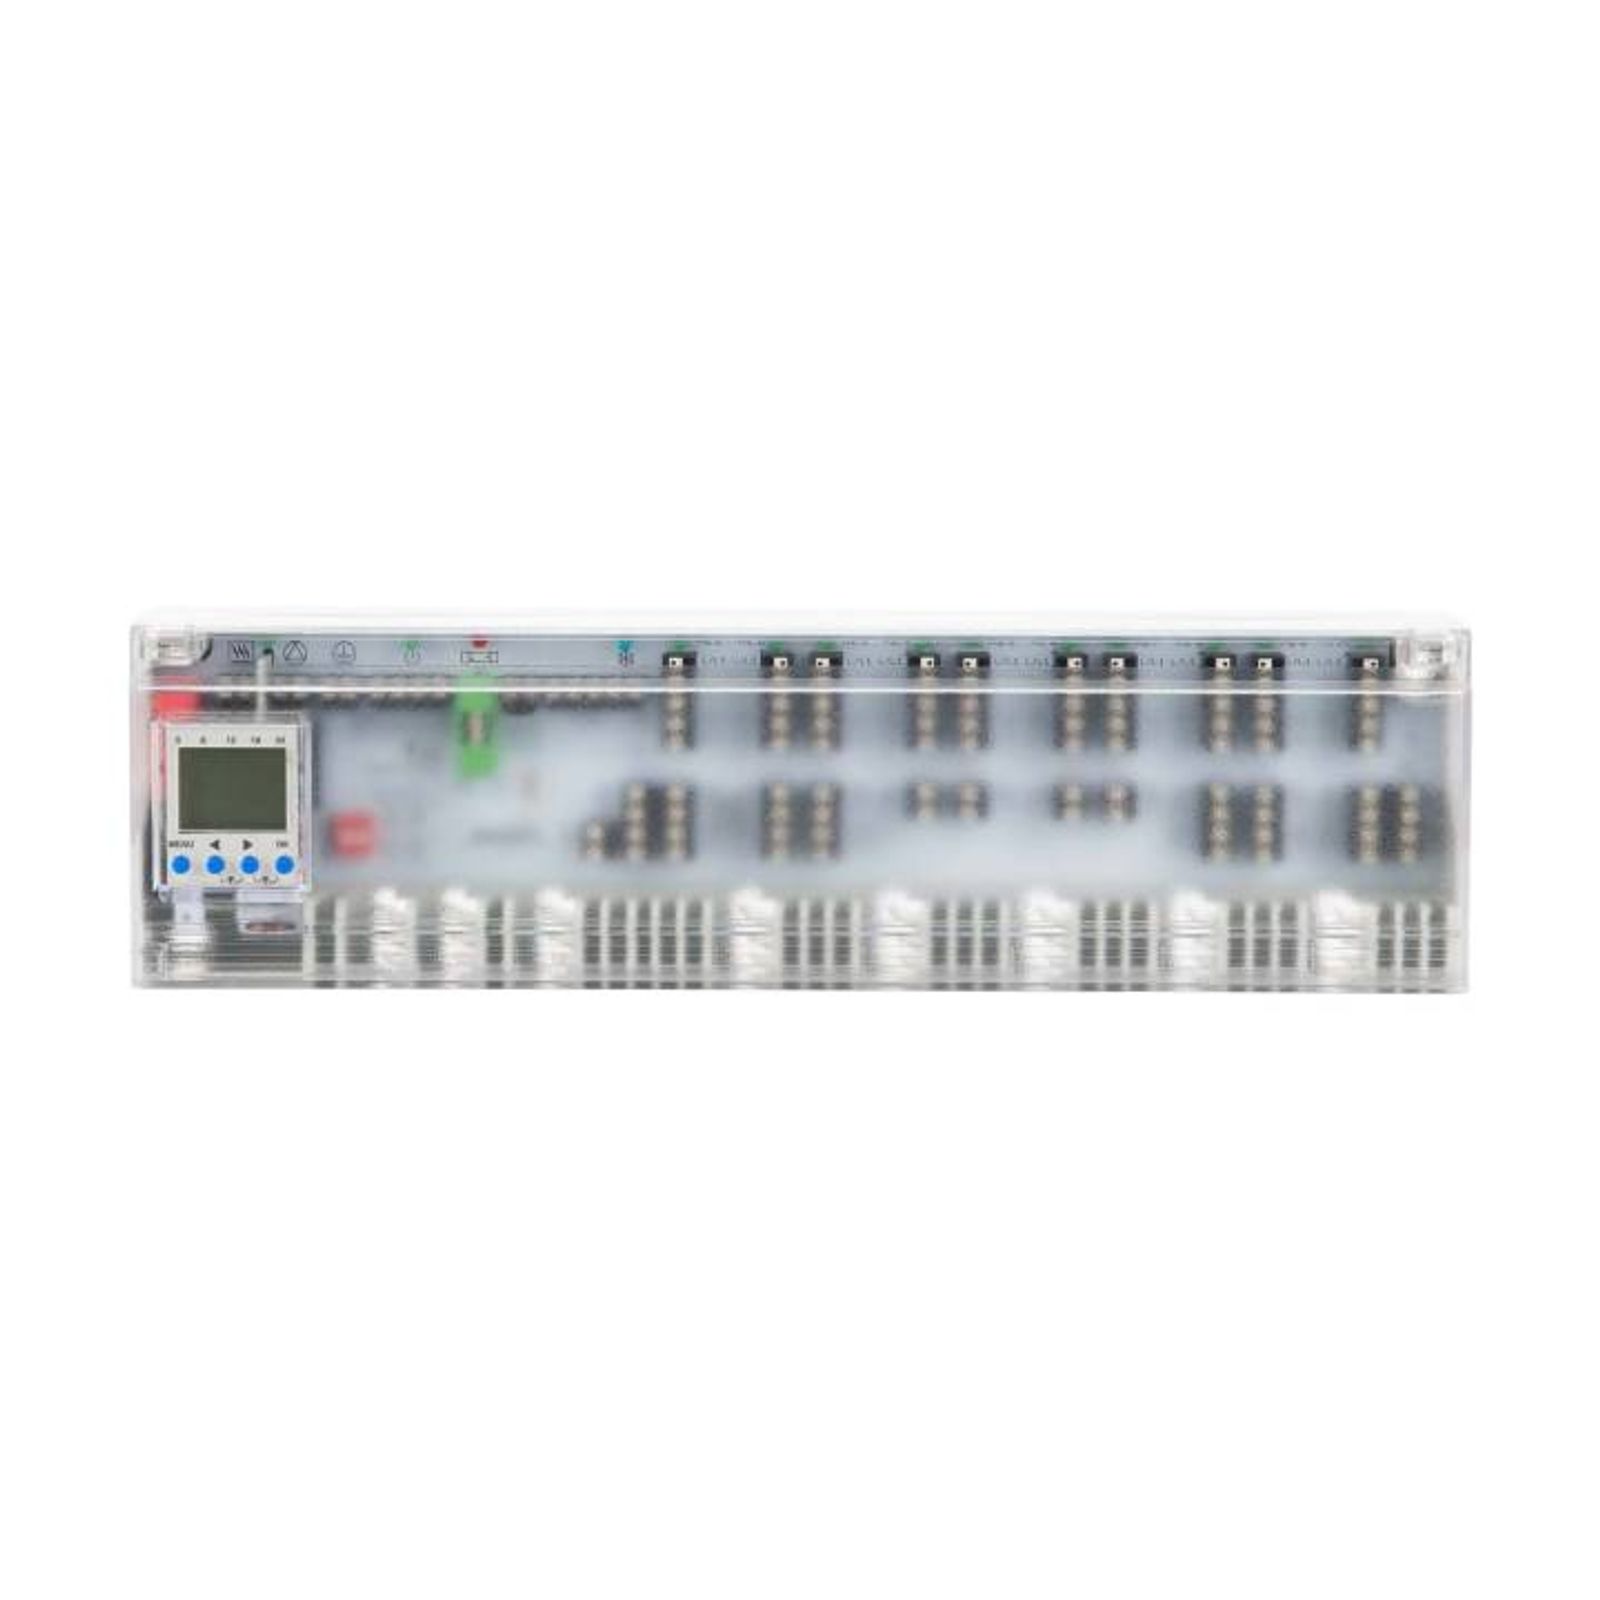 Anschlussleiste Alpha Basis direct Control 230 V für 10 Heiz- und Kühlzonen